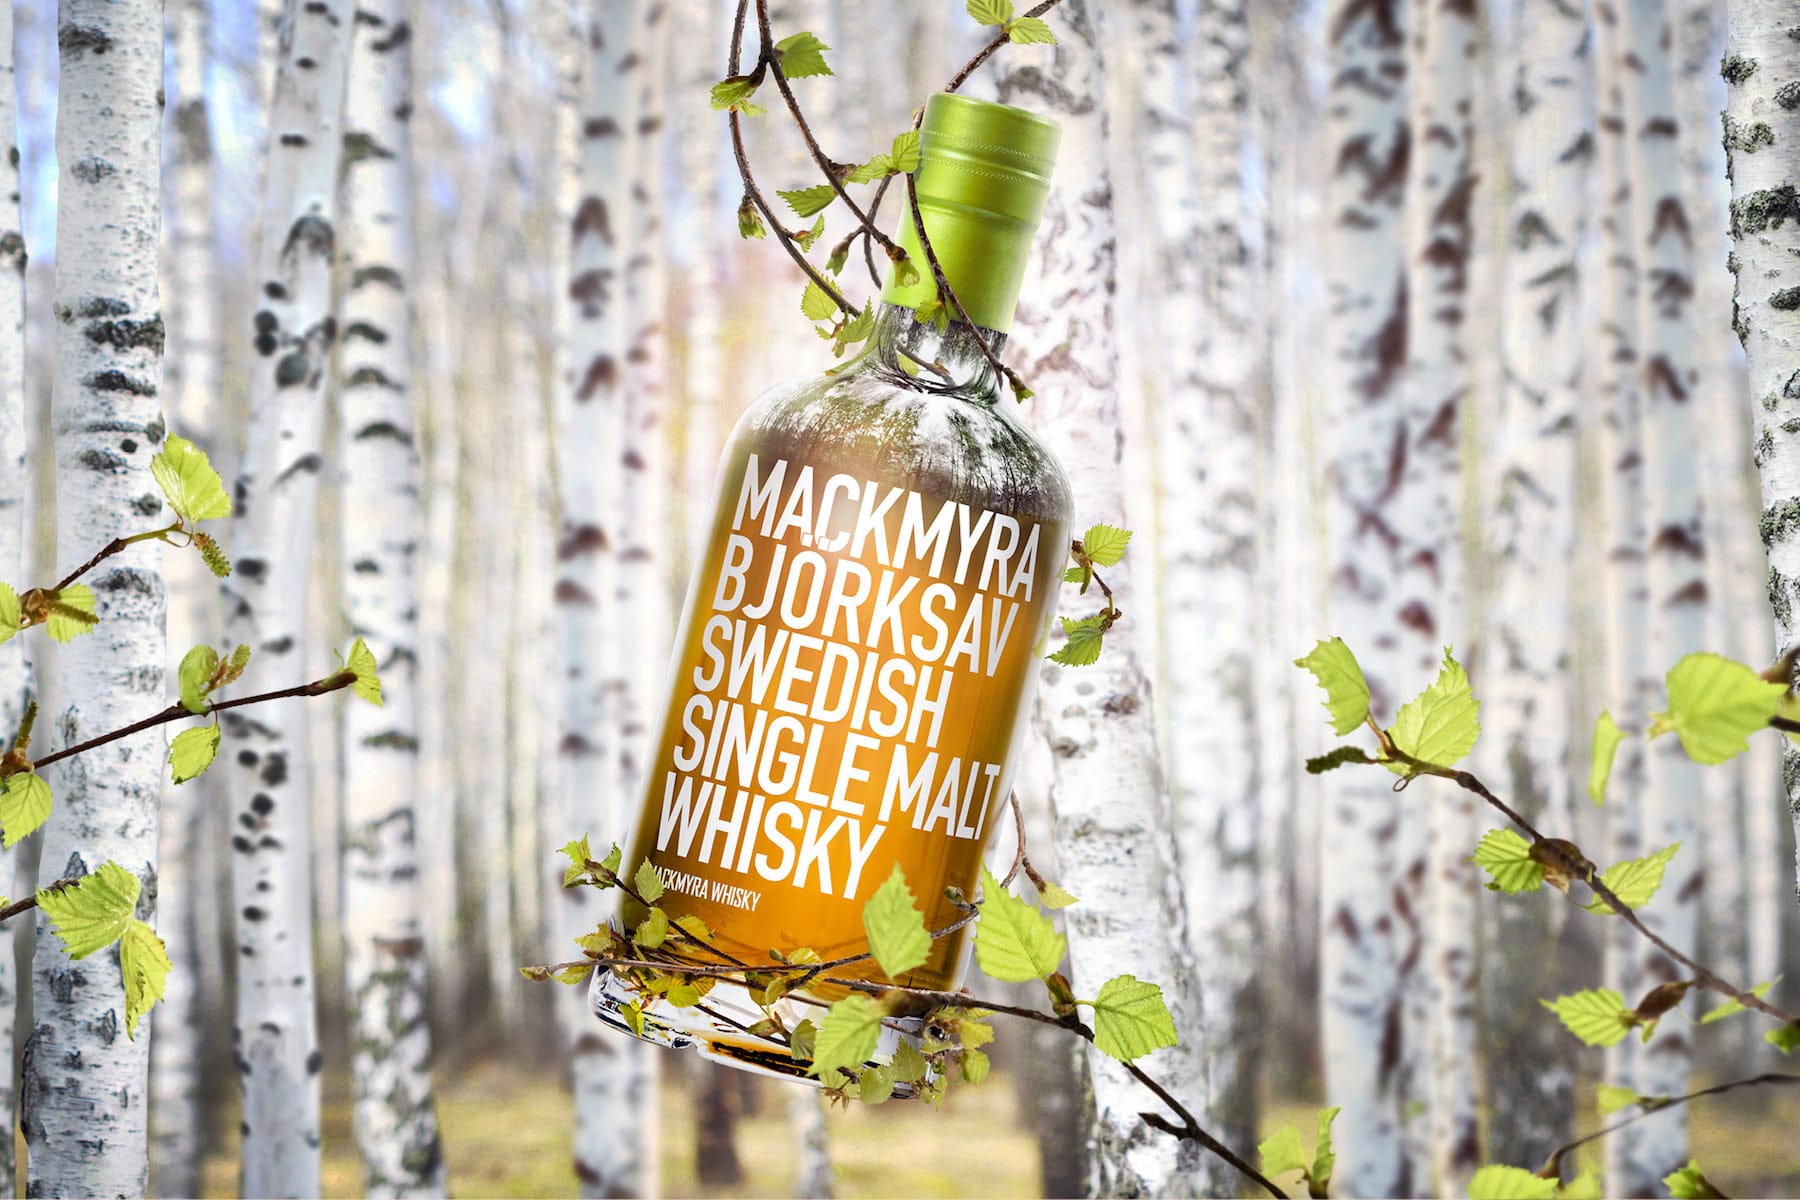 Review and Tasting Notes for Mackmyra Björksav Swedish Whisky